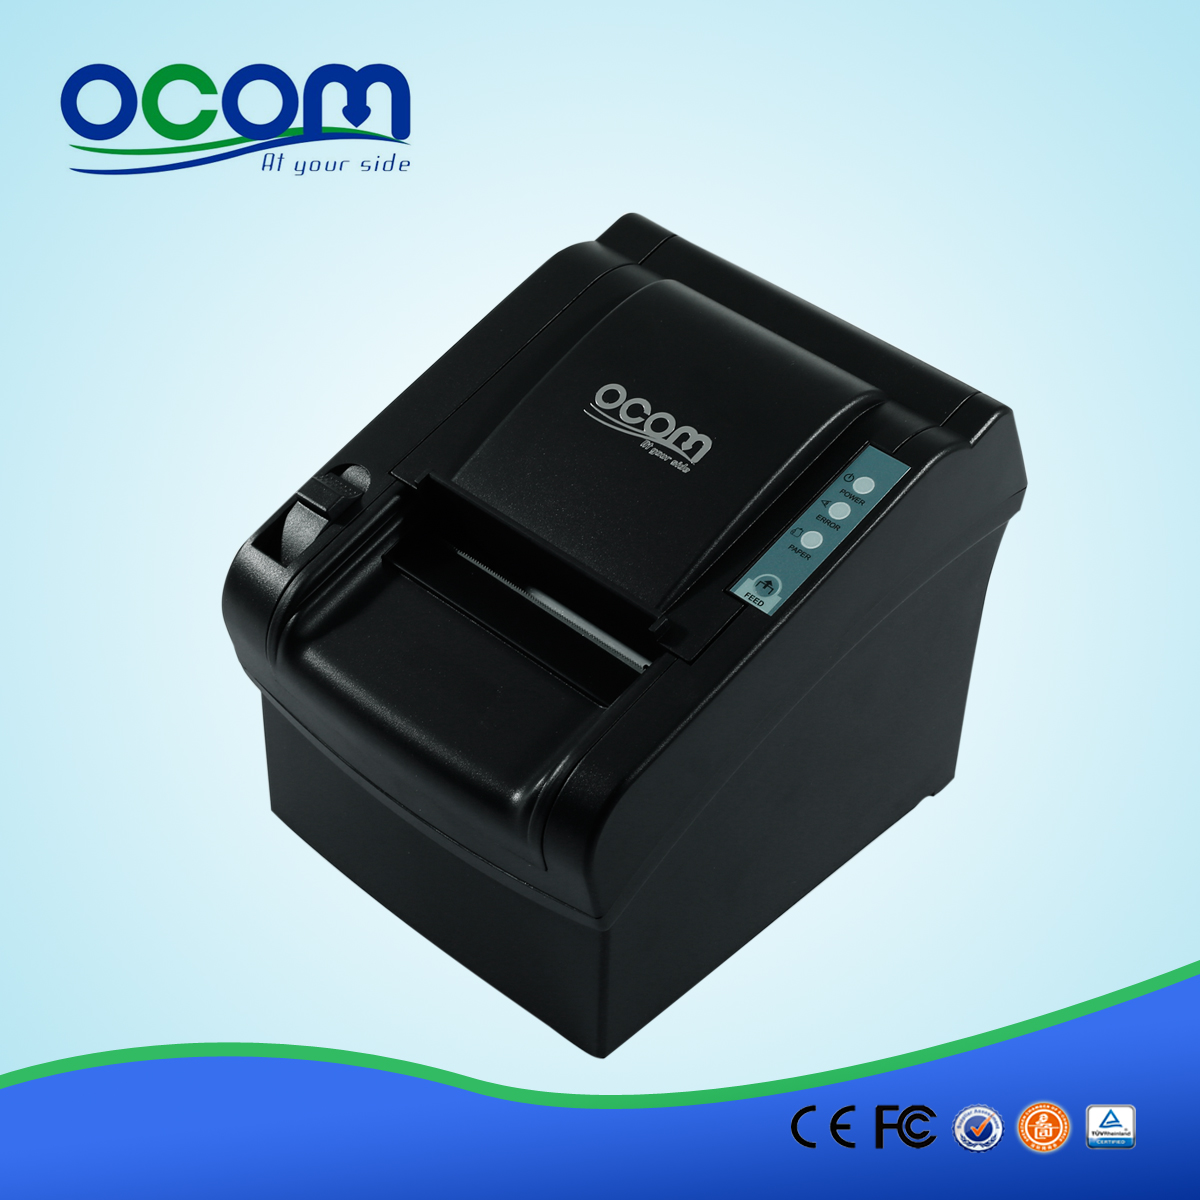 OCPP-802: stampante di ricevute pos vendita termico, prezzo diretto stampante termica